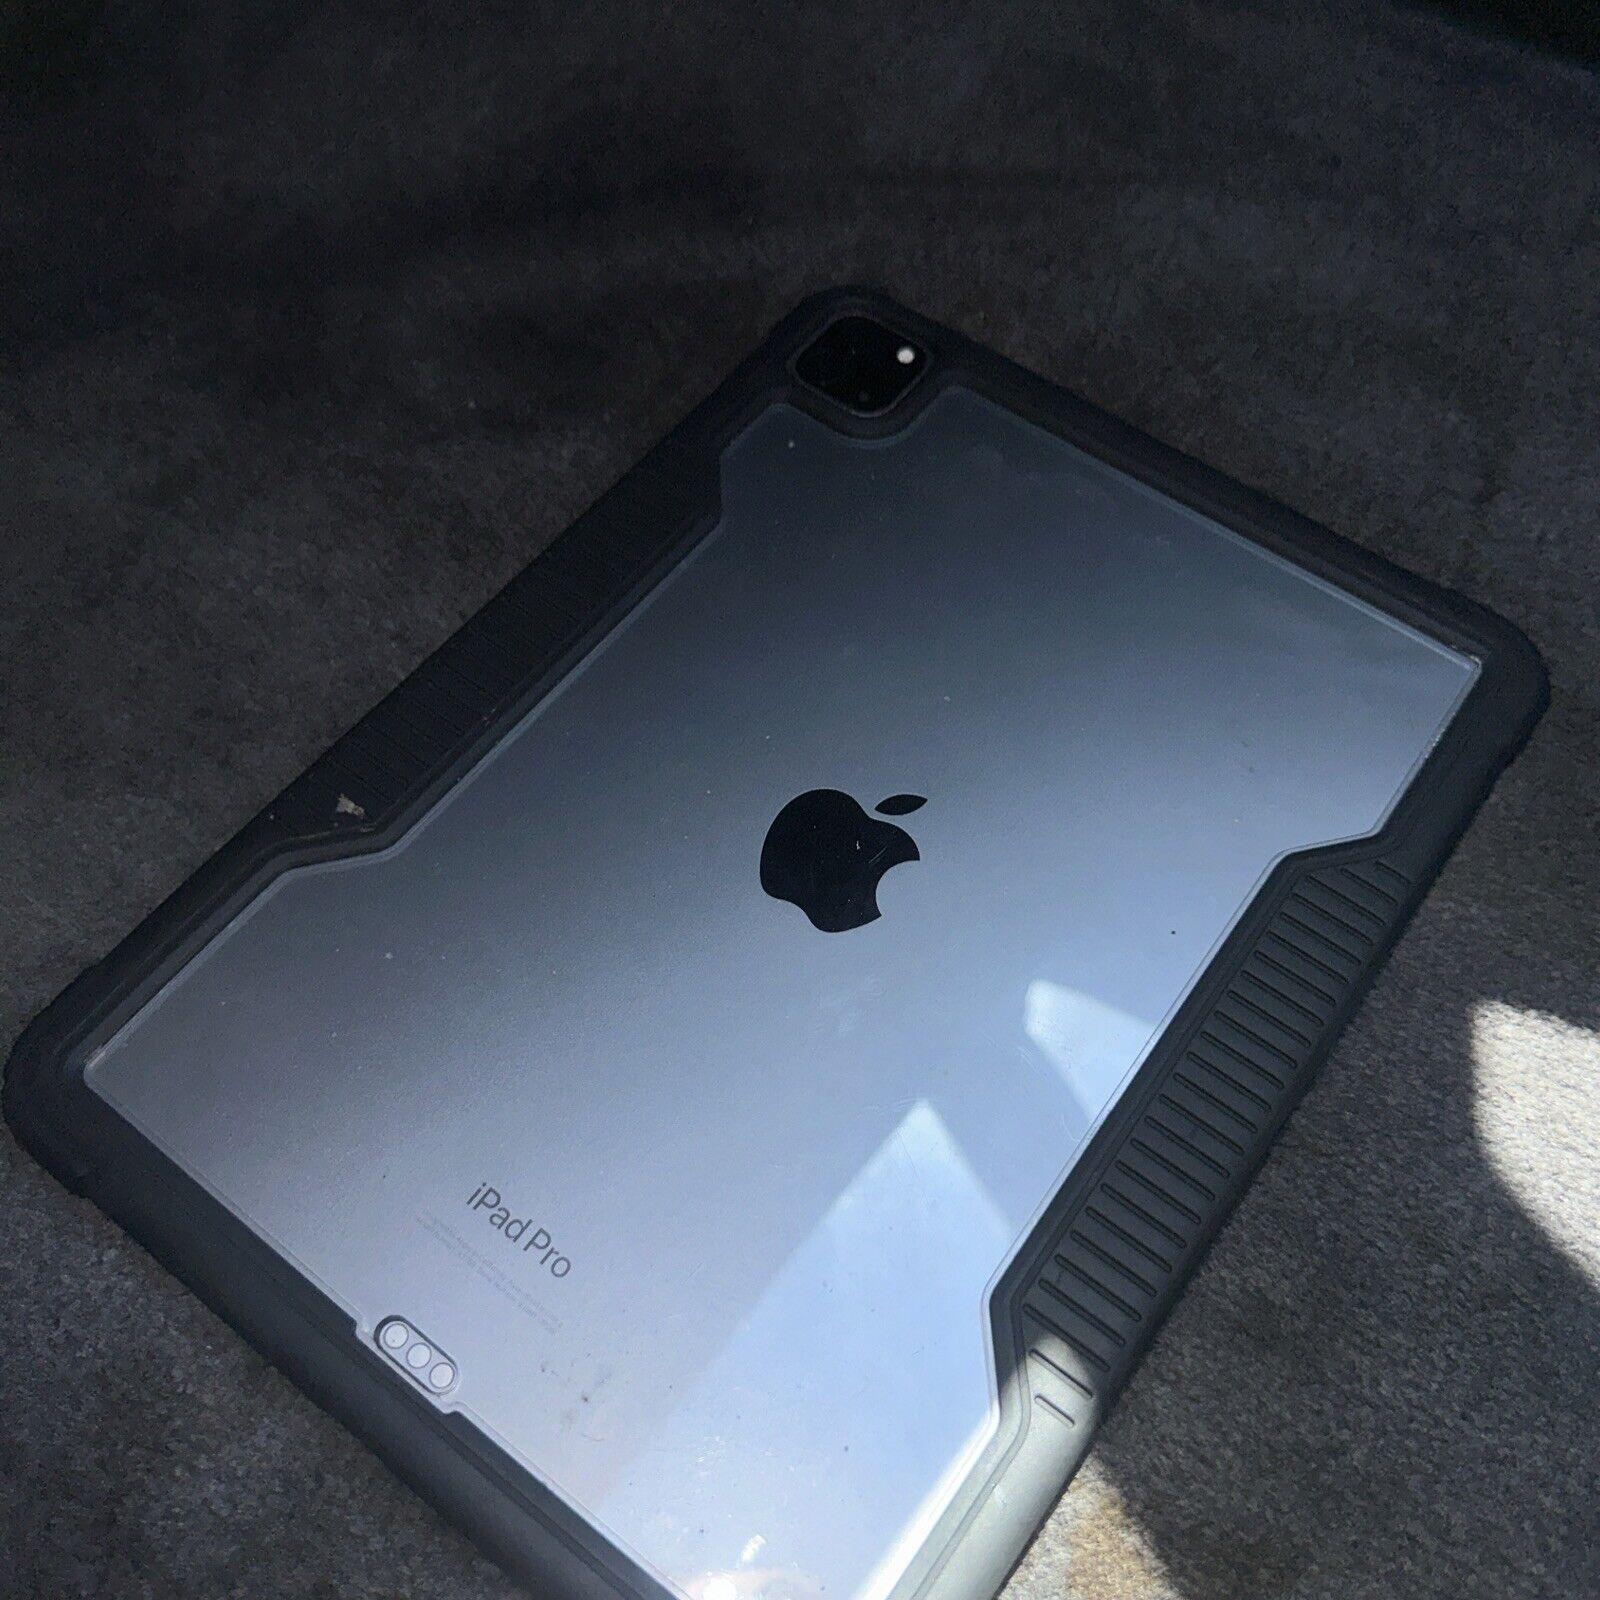 Apple iPad Pro 4th Gen. 128GB, Wi-Fi + 4G (Unlocked), 12.9 in - Space Gray